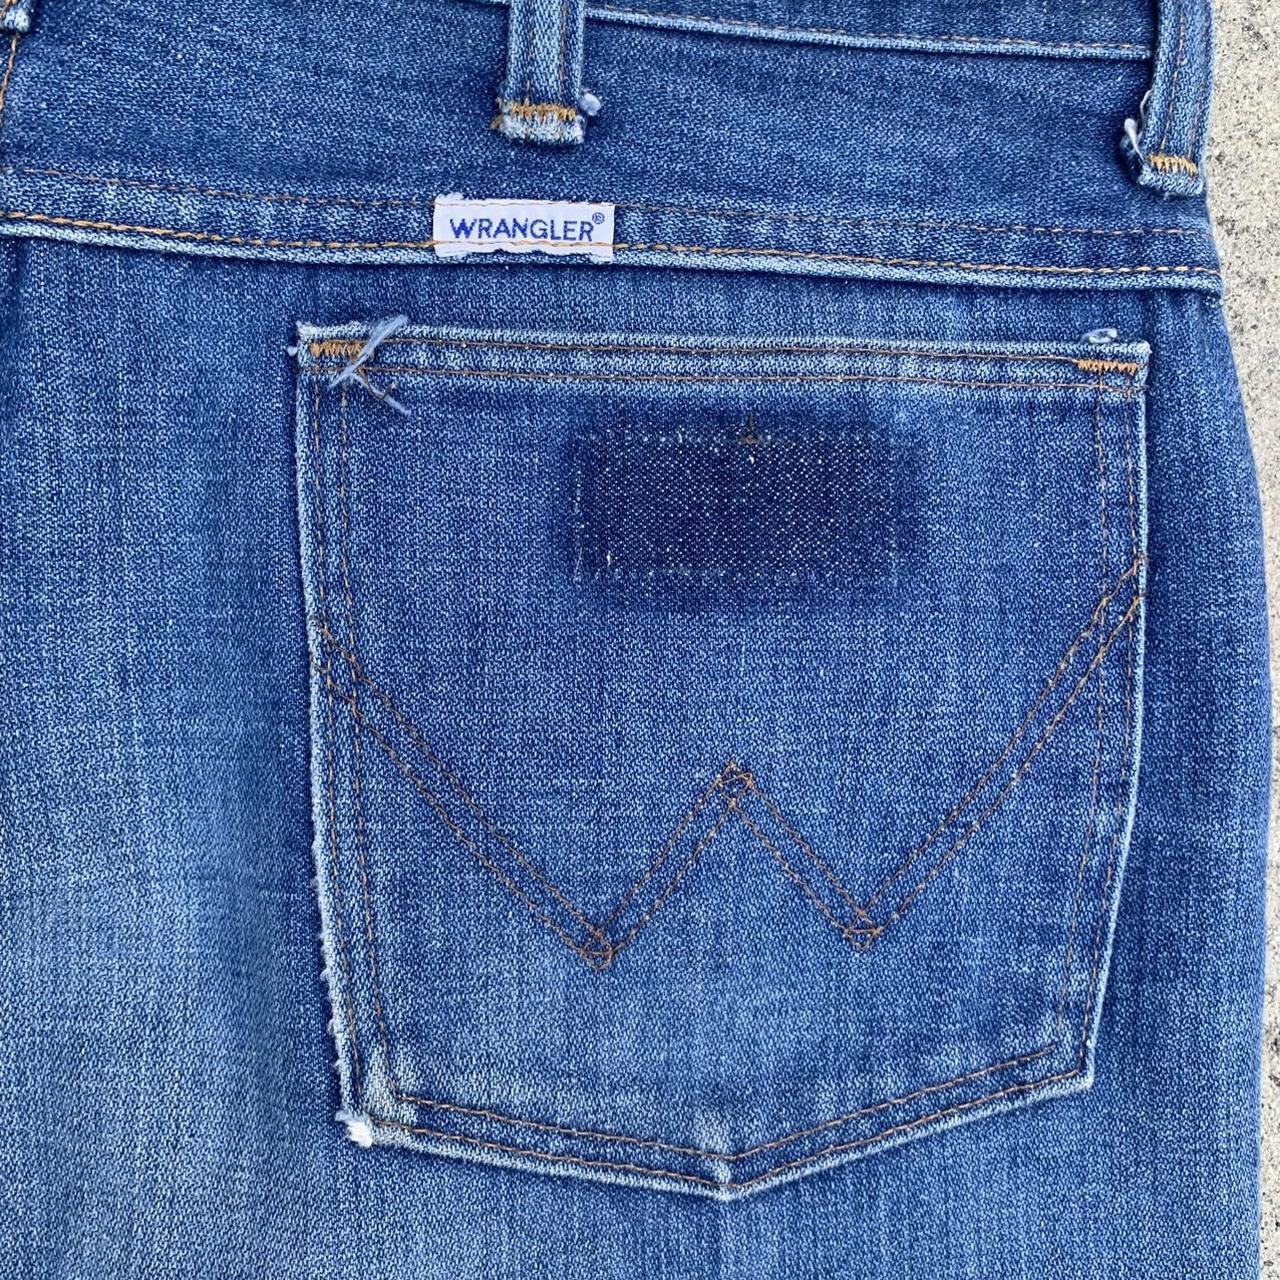 Vintage 70s Wrangler flares jeans Made in... - Depop